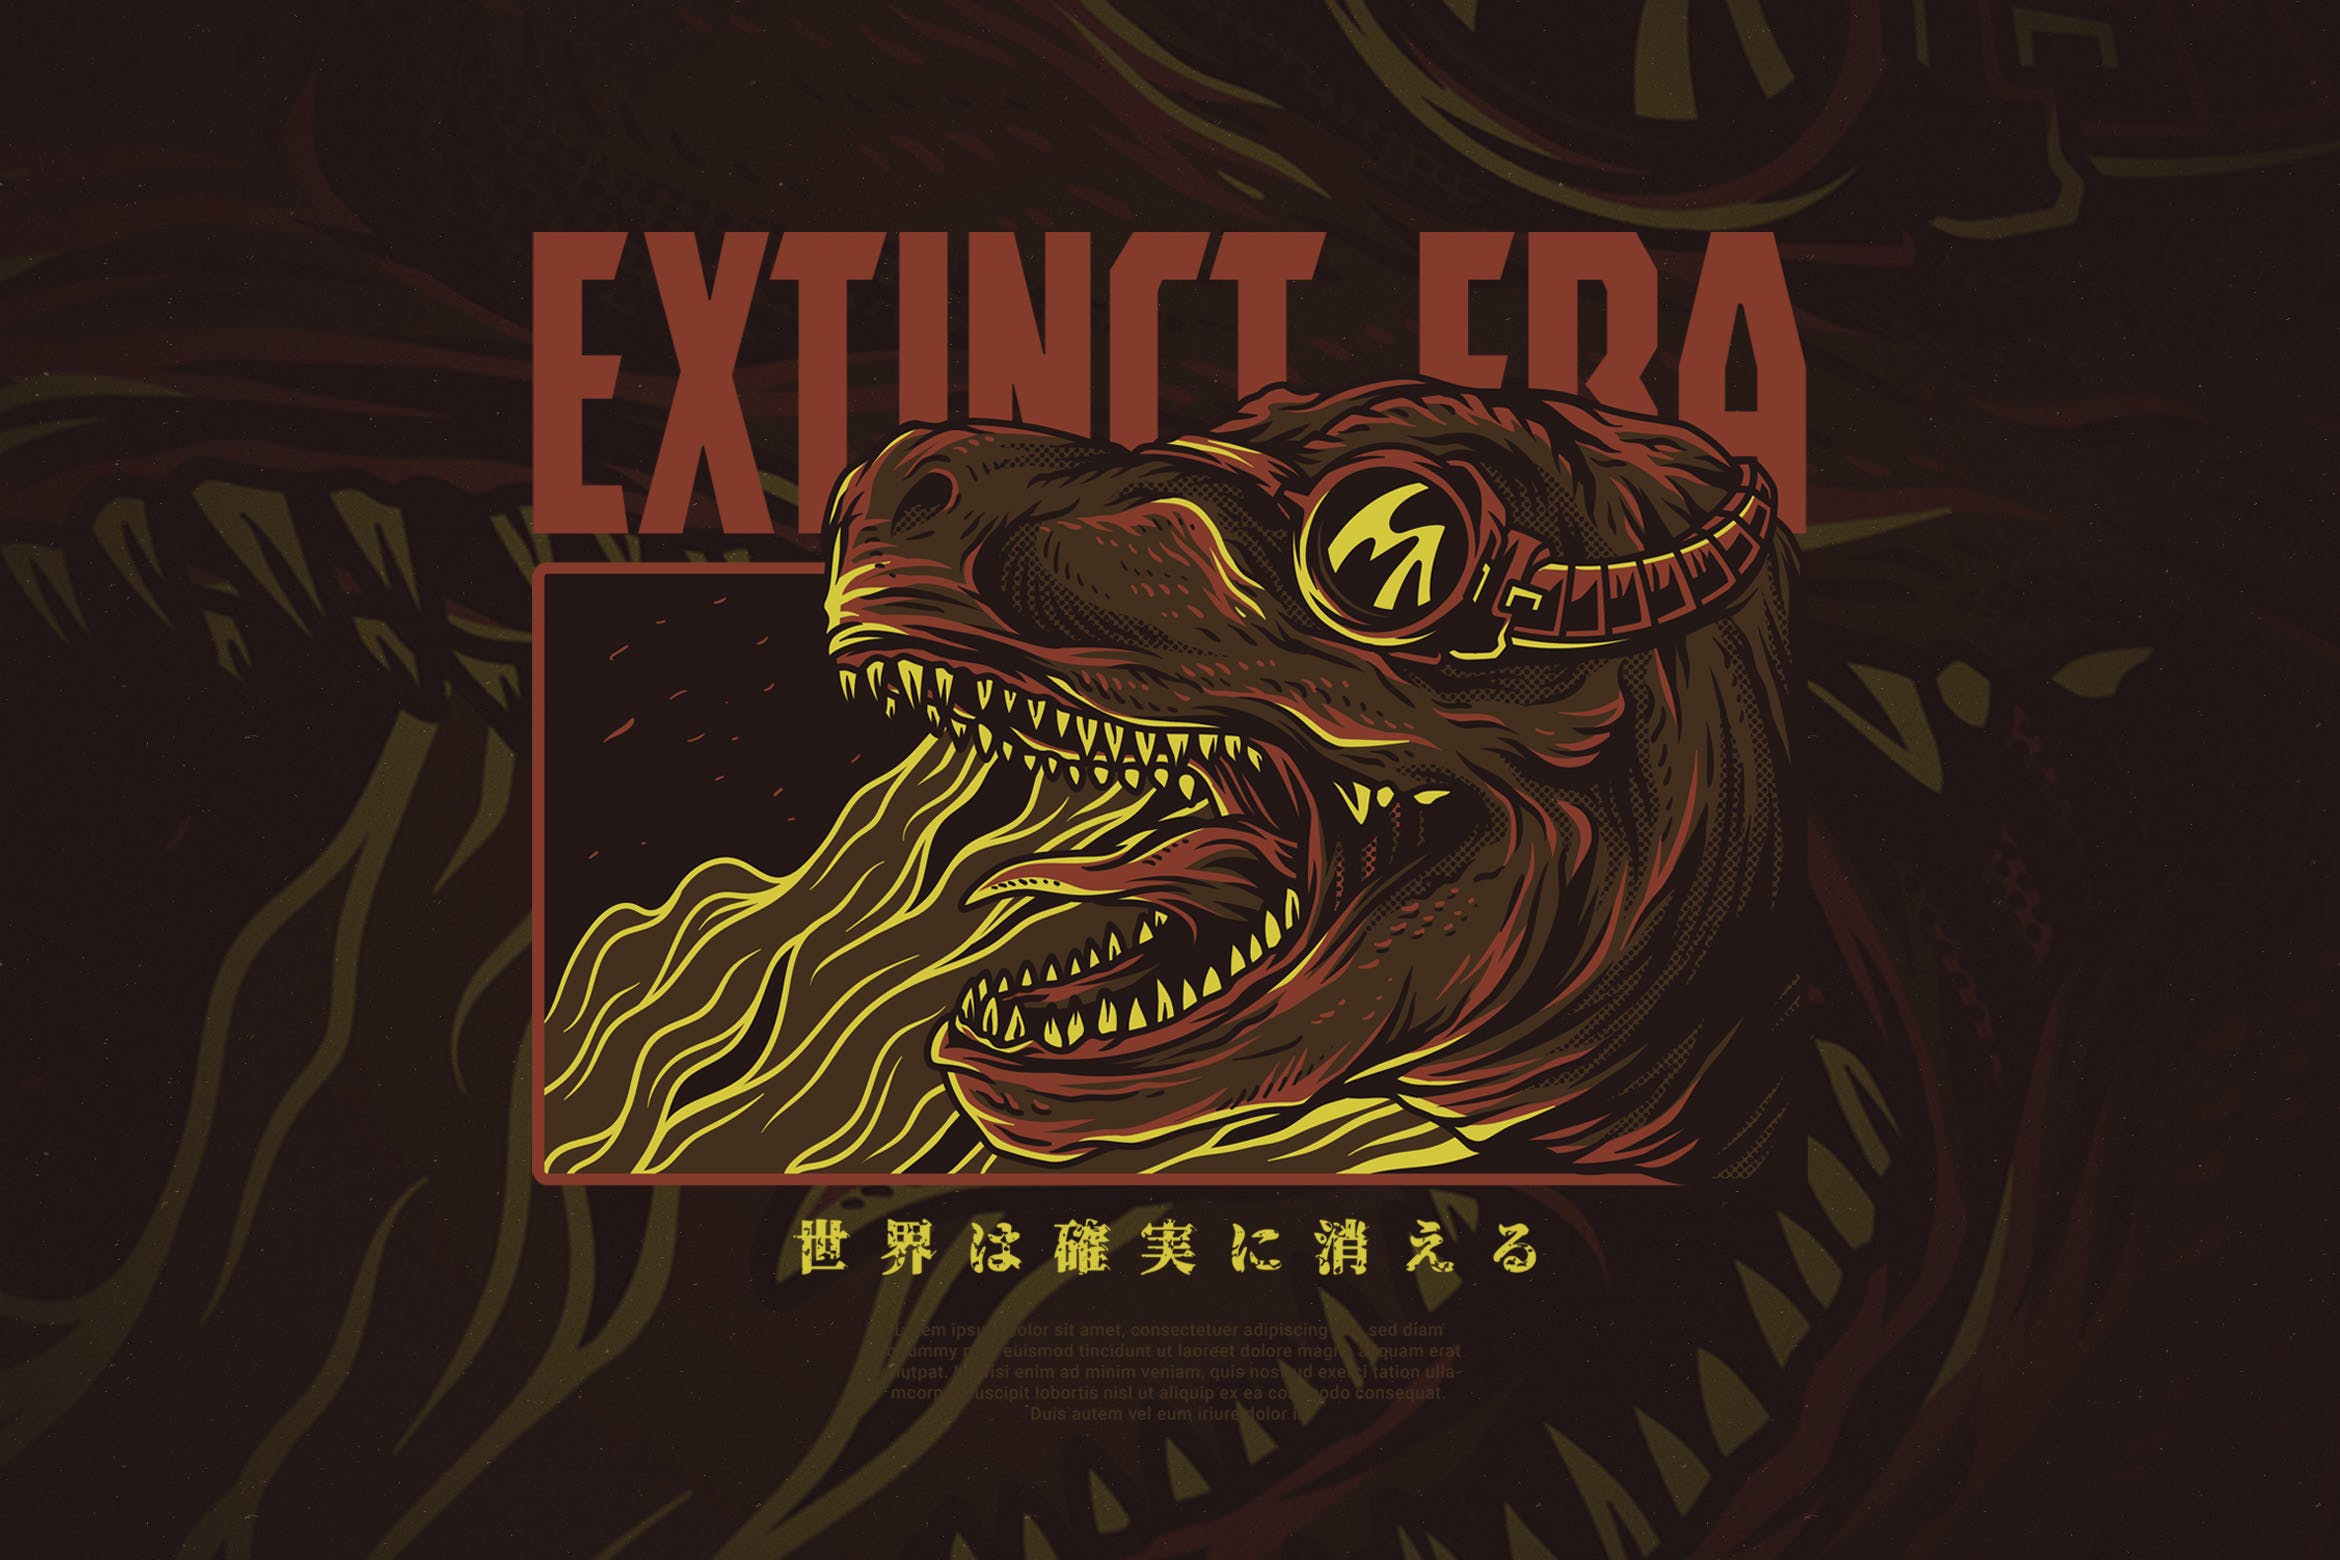 恐龙时代手绘插画T恤印花图案设计素材 Extinct Era插图